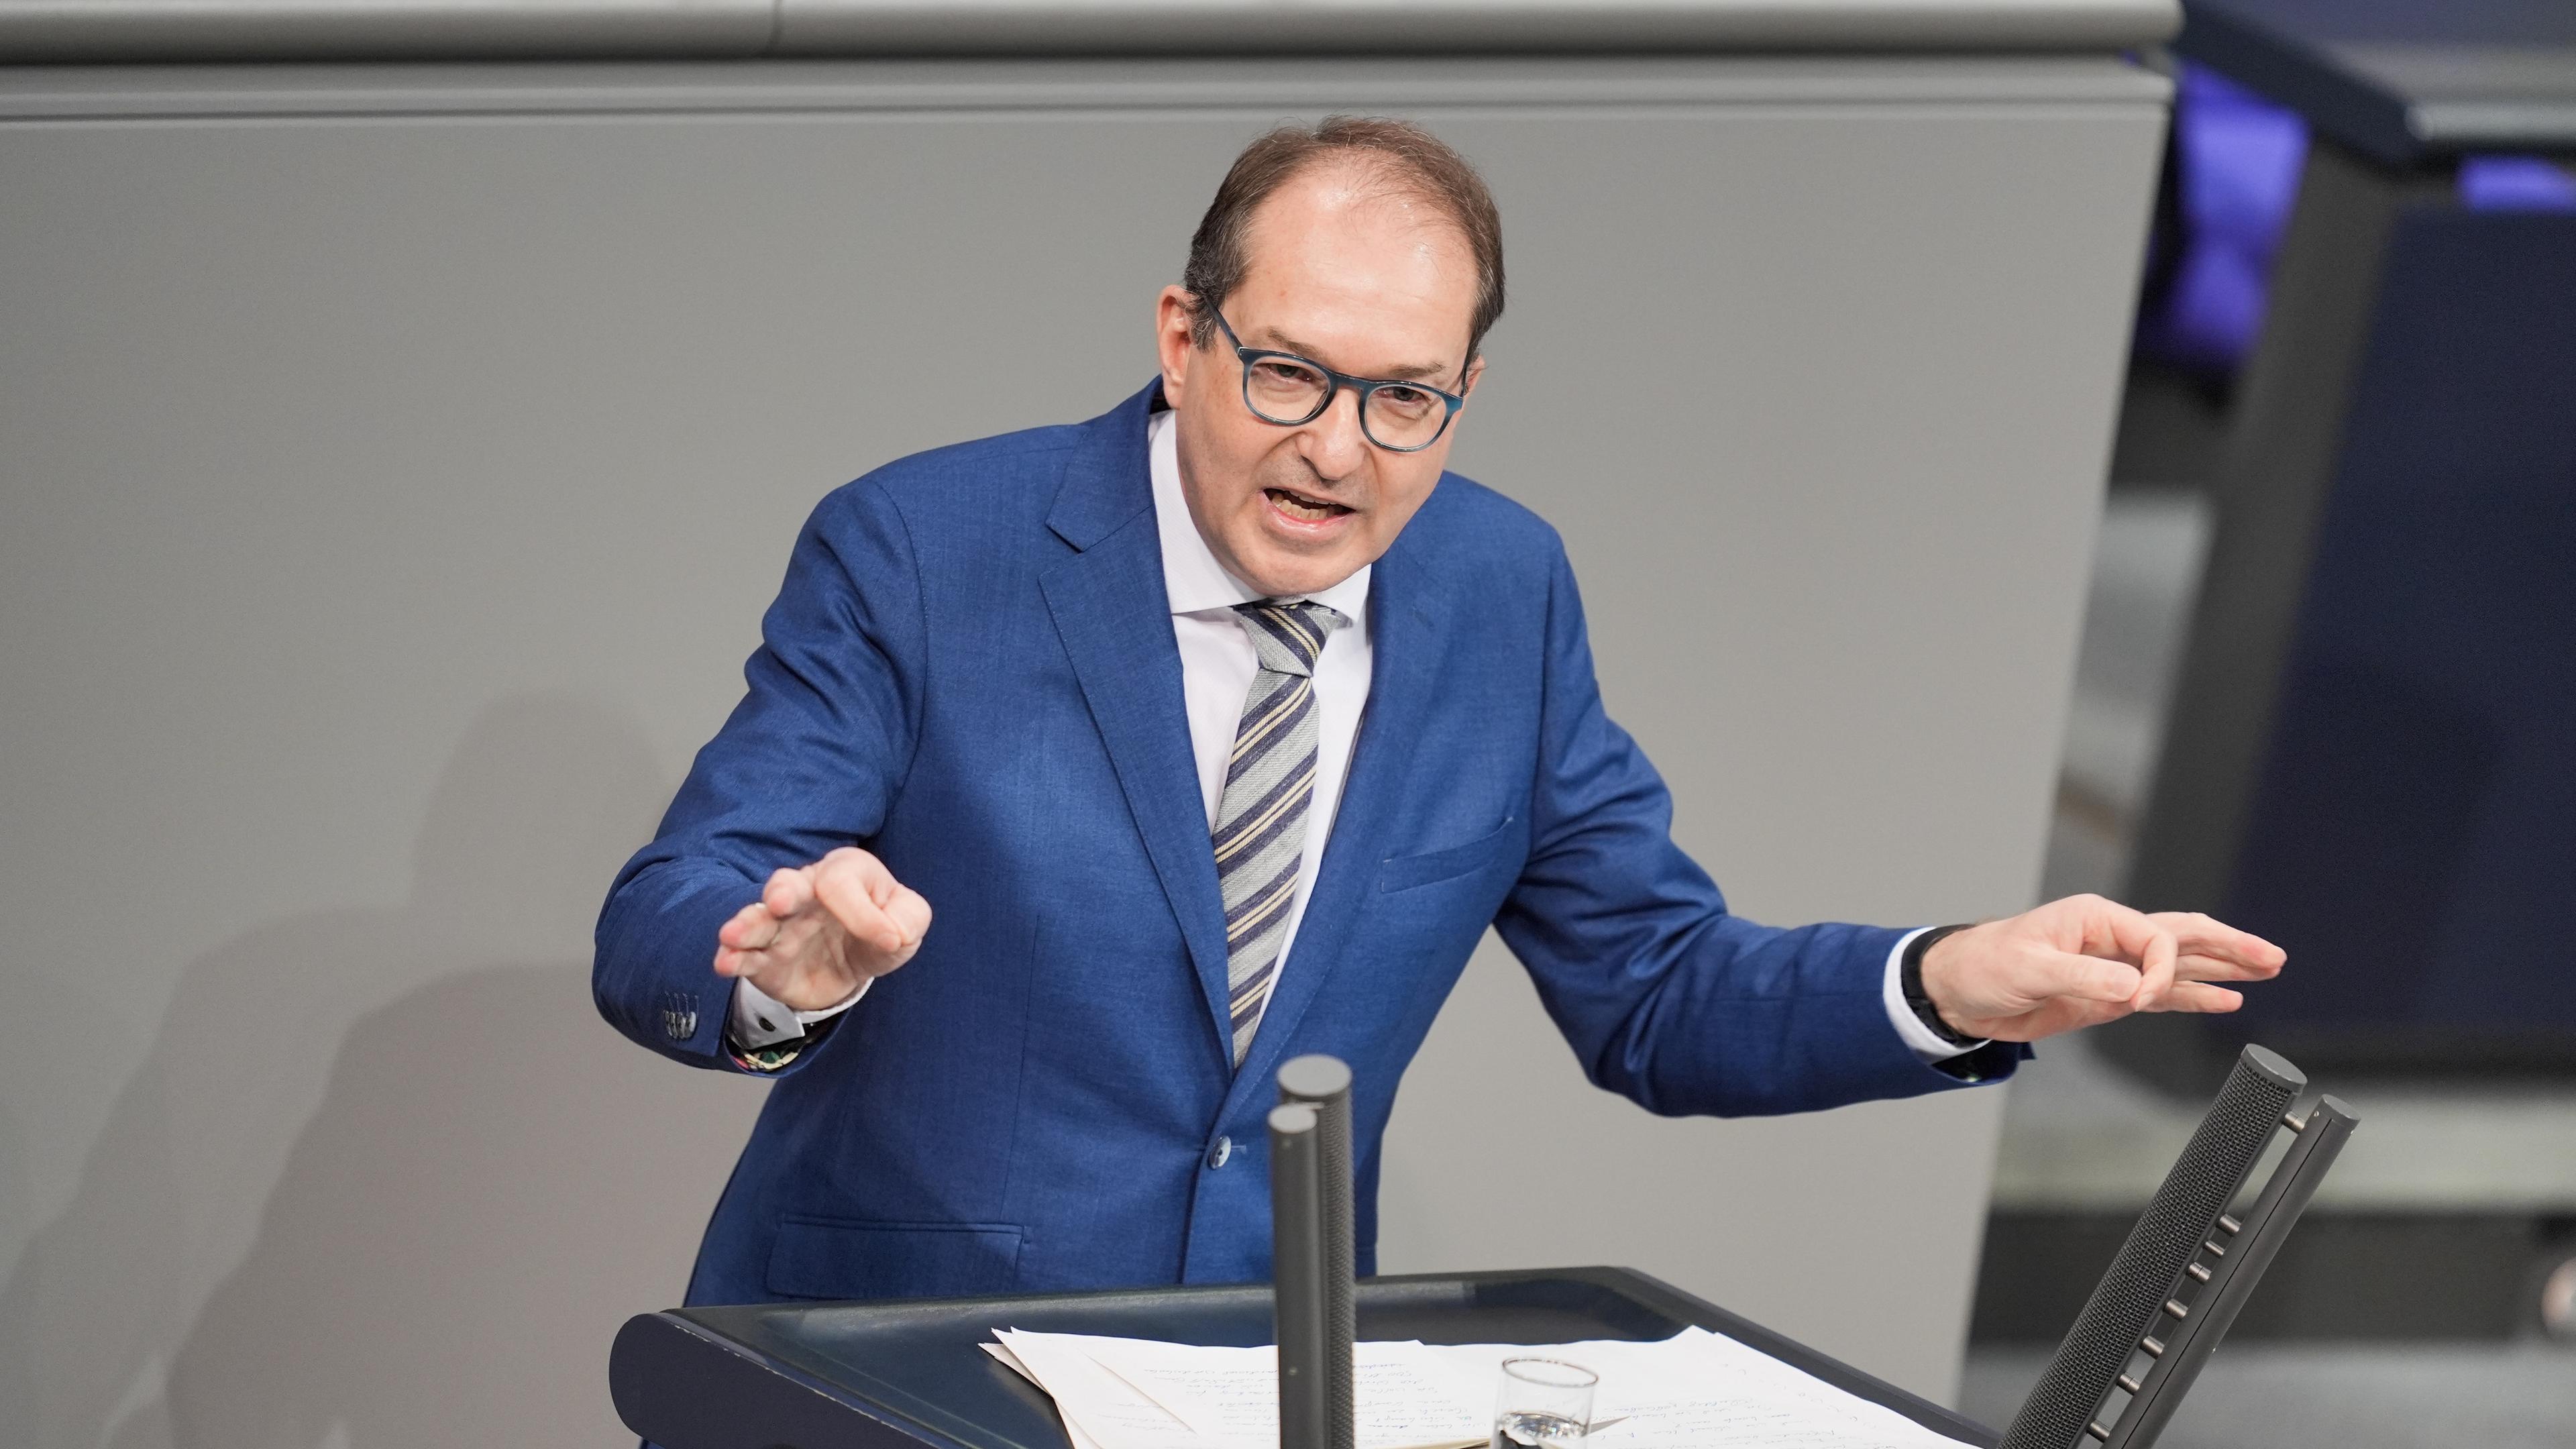  Alexander Dobrindt, CSU-Landesgruppenchef, spricht nach einer Regierungserklärung zum Jahreswirtschaftsbericht im Bundestag